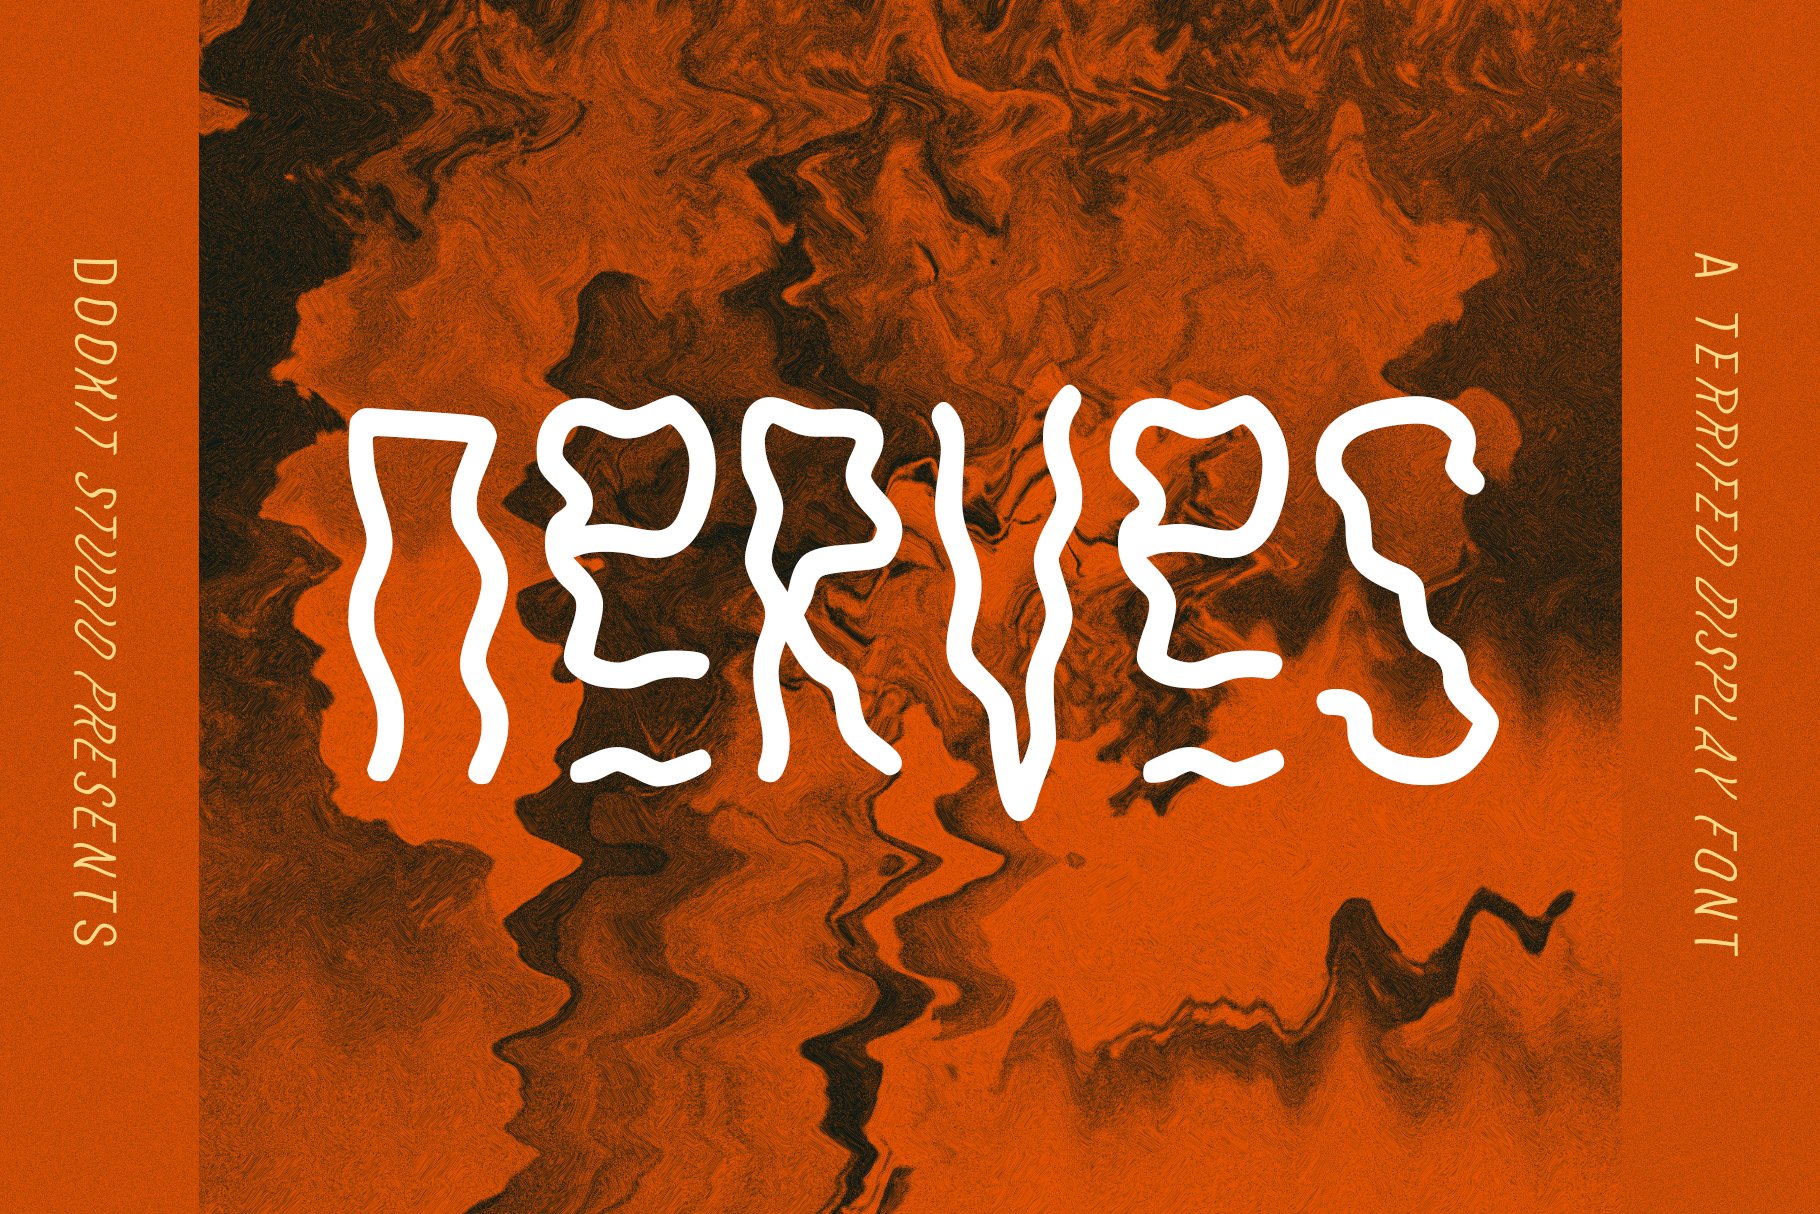 Nerves halloween horror font cover image.